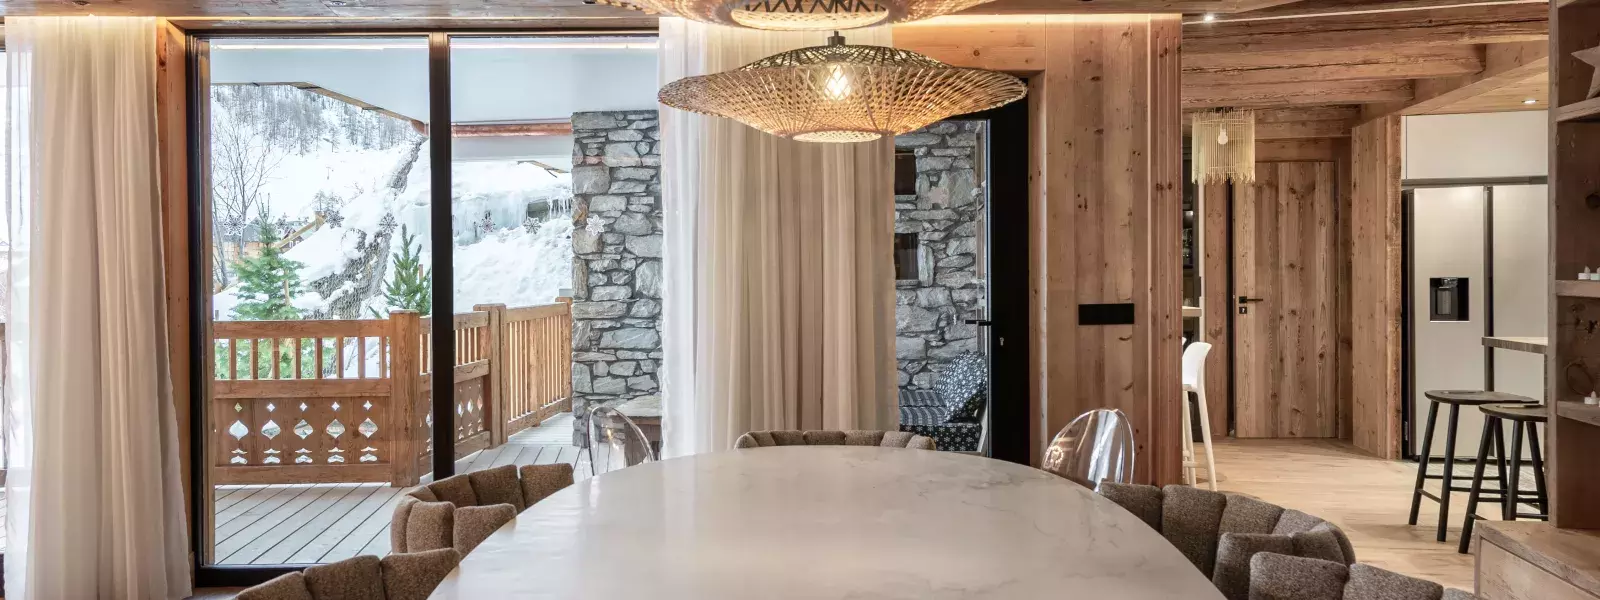  Best view - Location chalets Covarel - Val d'Isère Alpes - France – Salle à manger bis